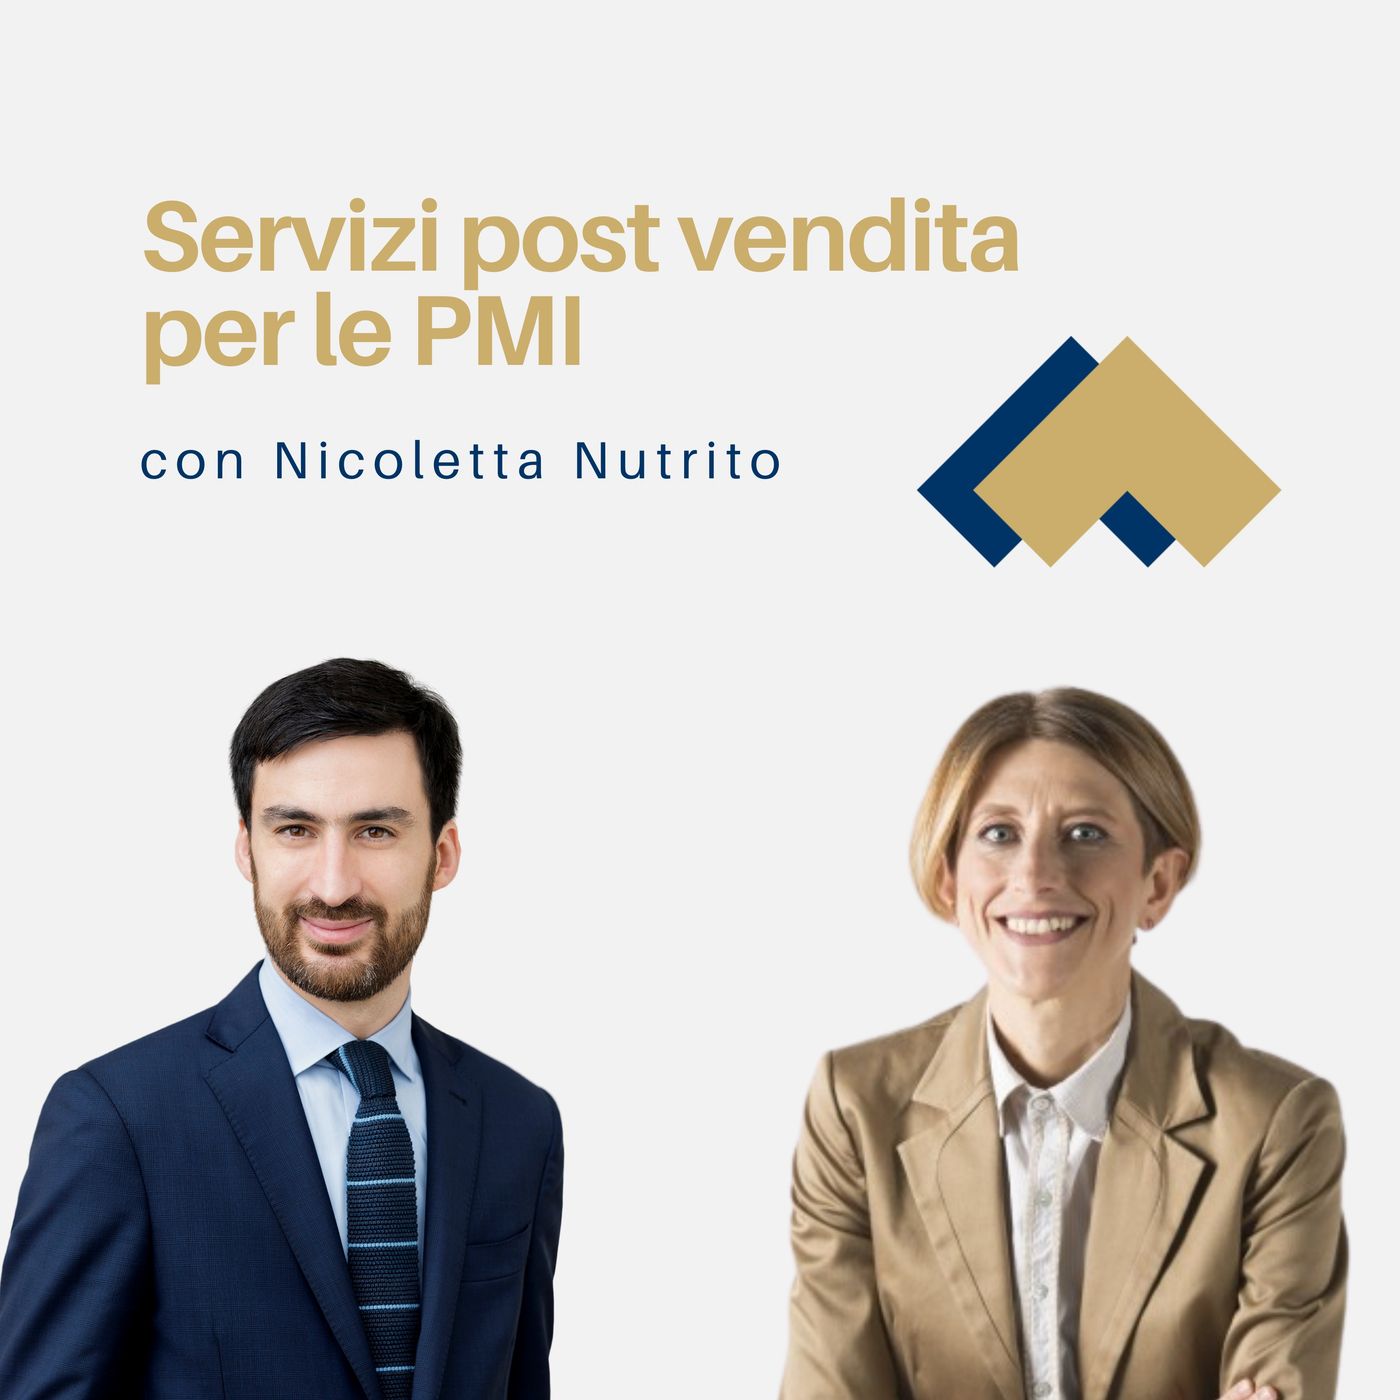 070 - Servizi post vendita per le PMI con Nicoletta Nutrito